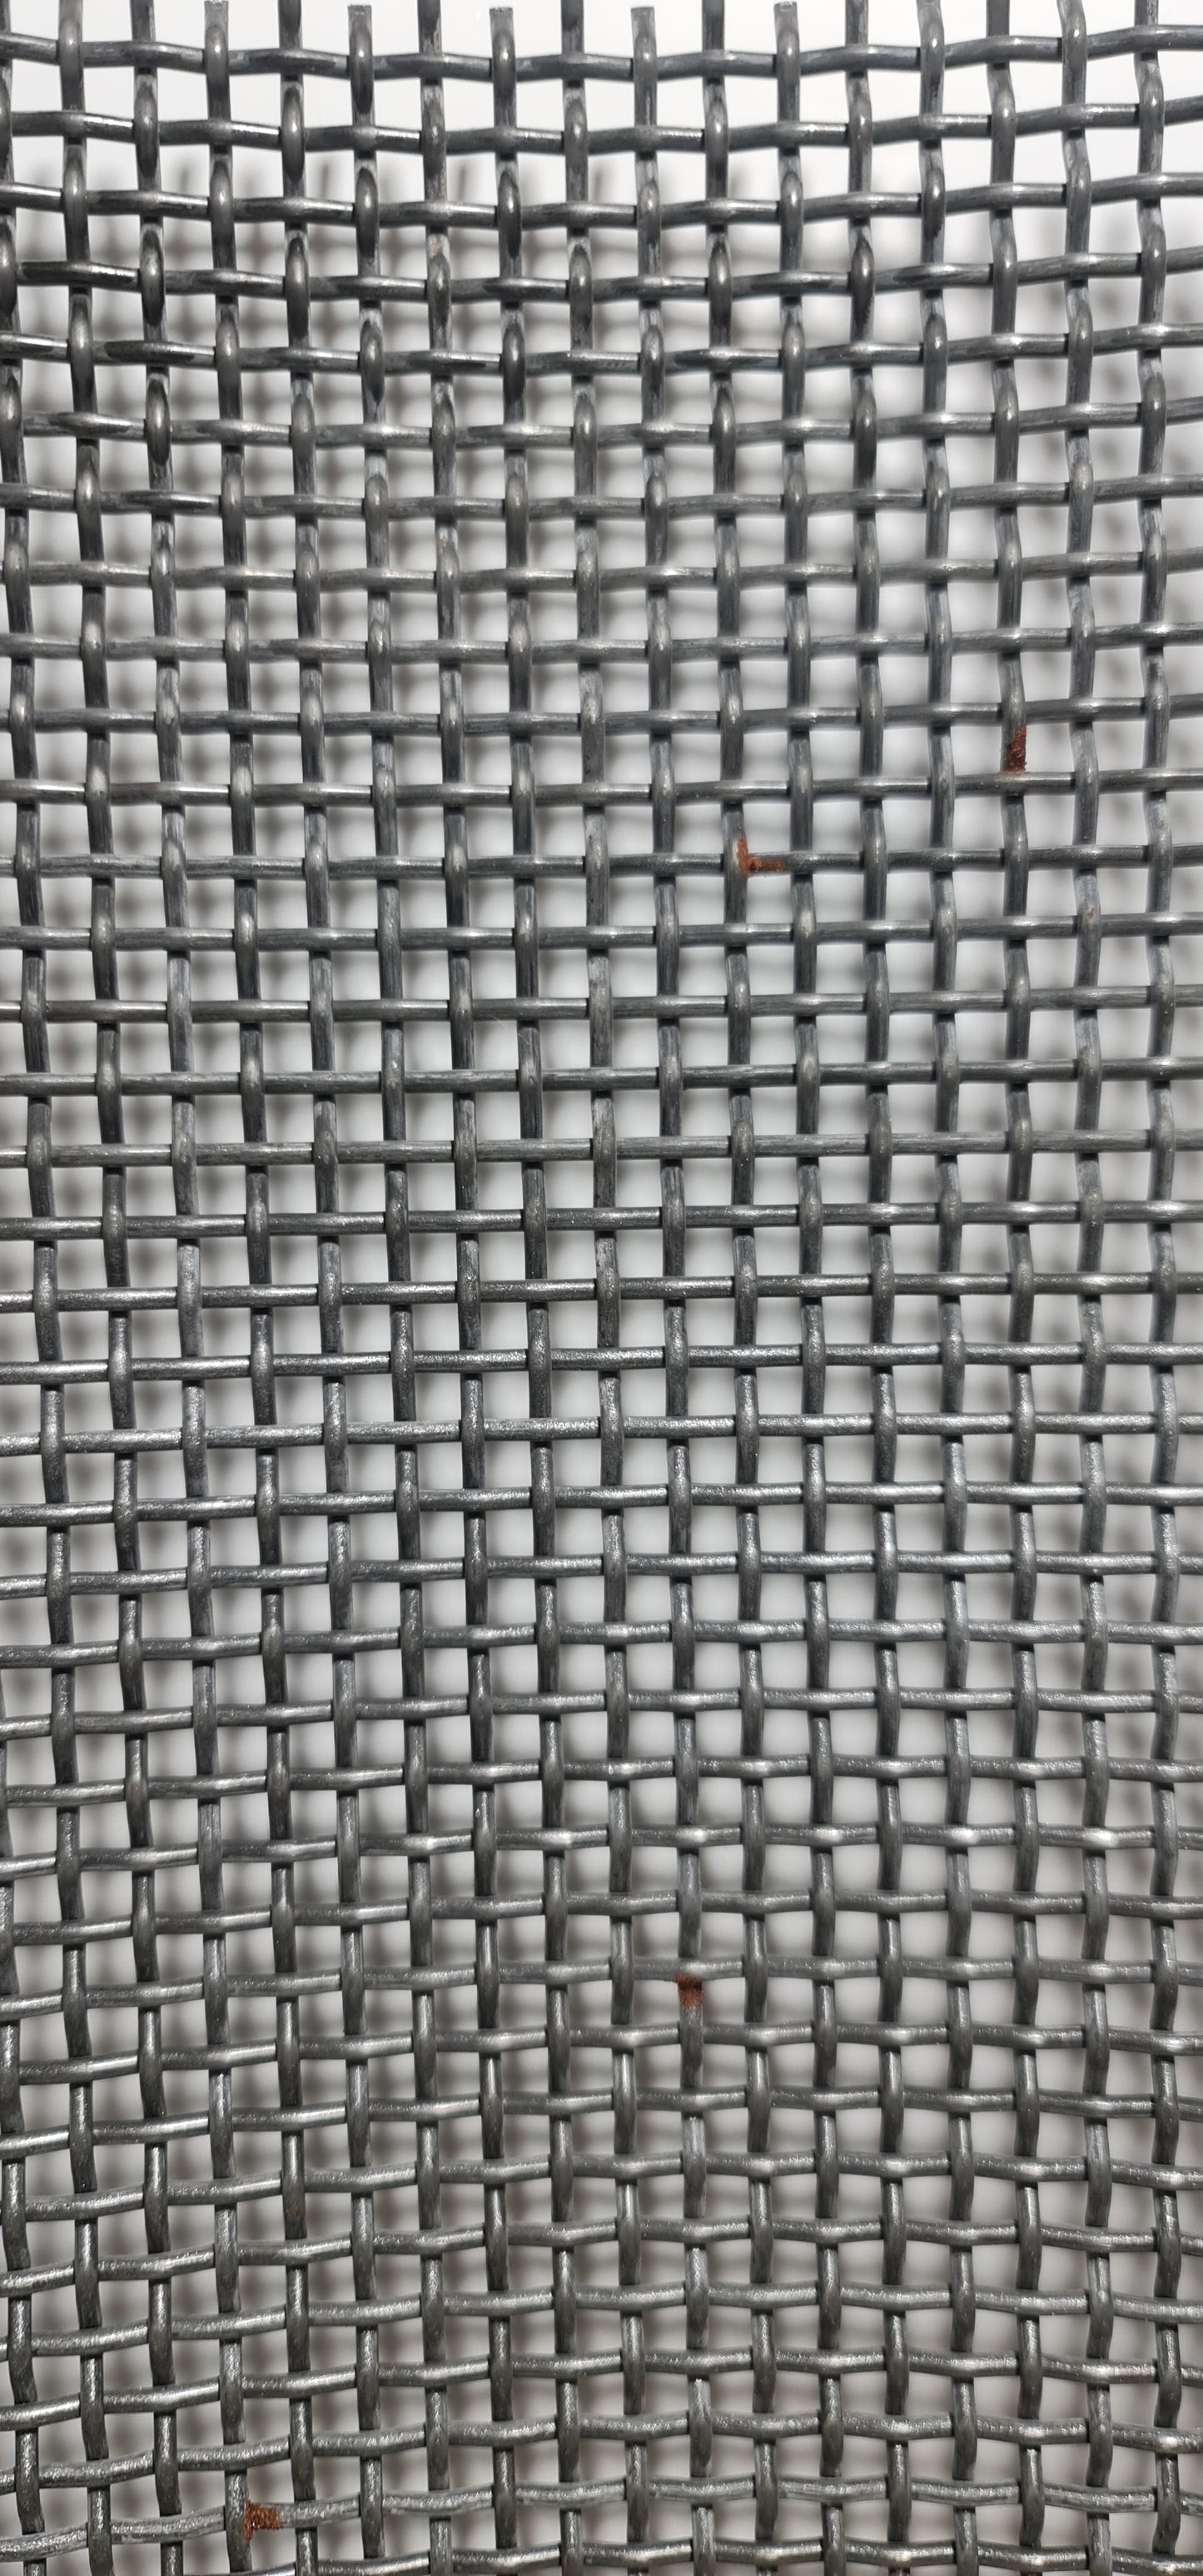 Fabric sieve 670x660x2.2 MW 3.5 mm